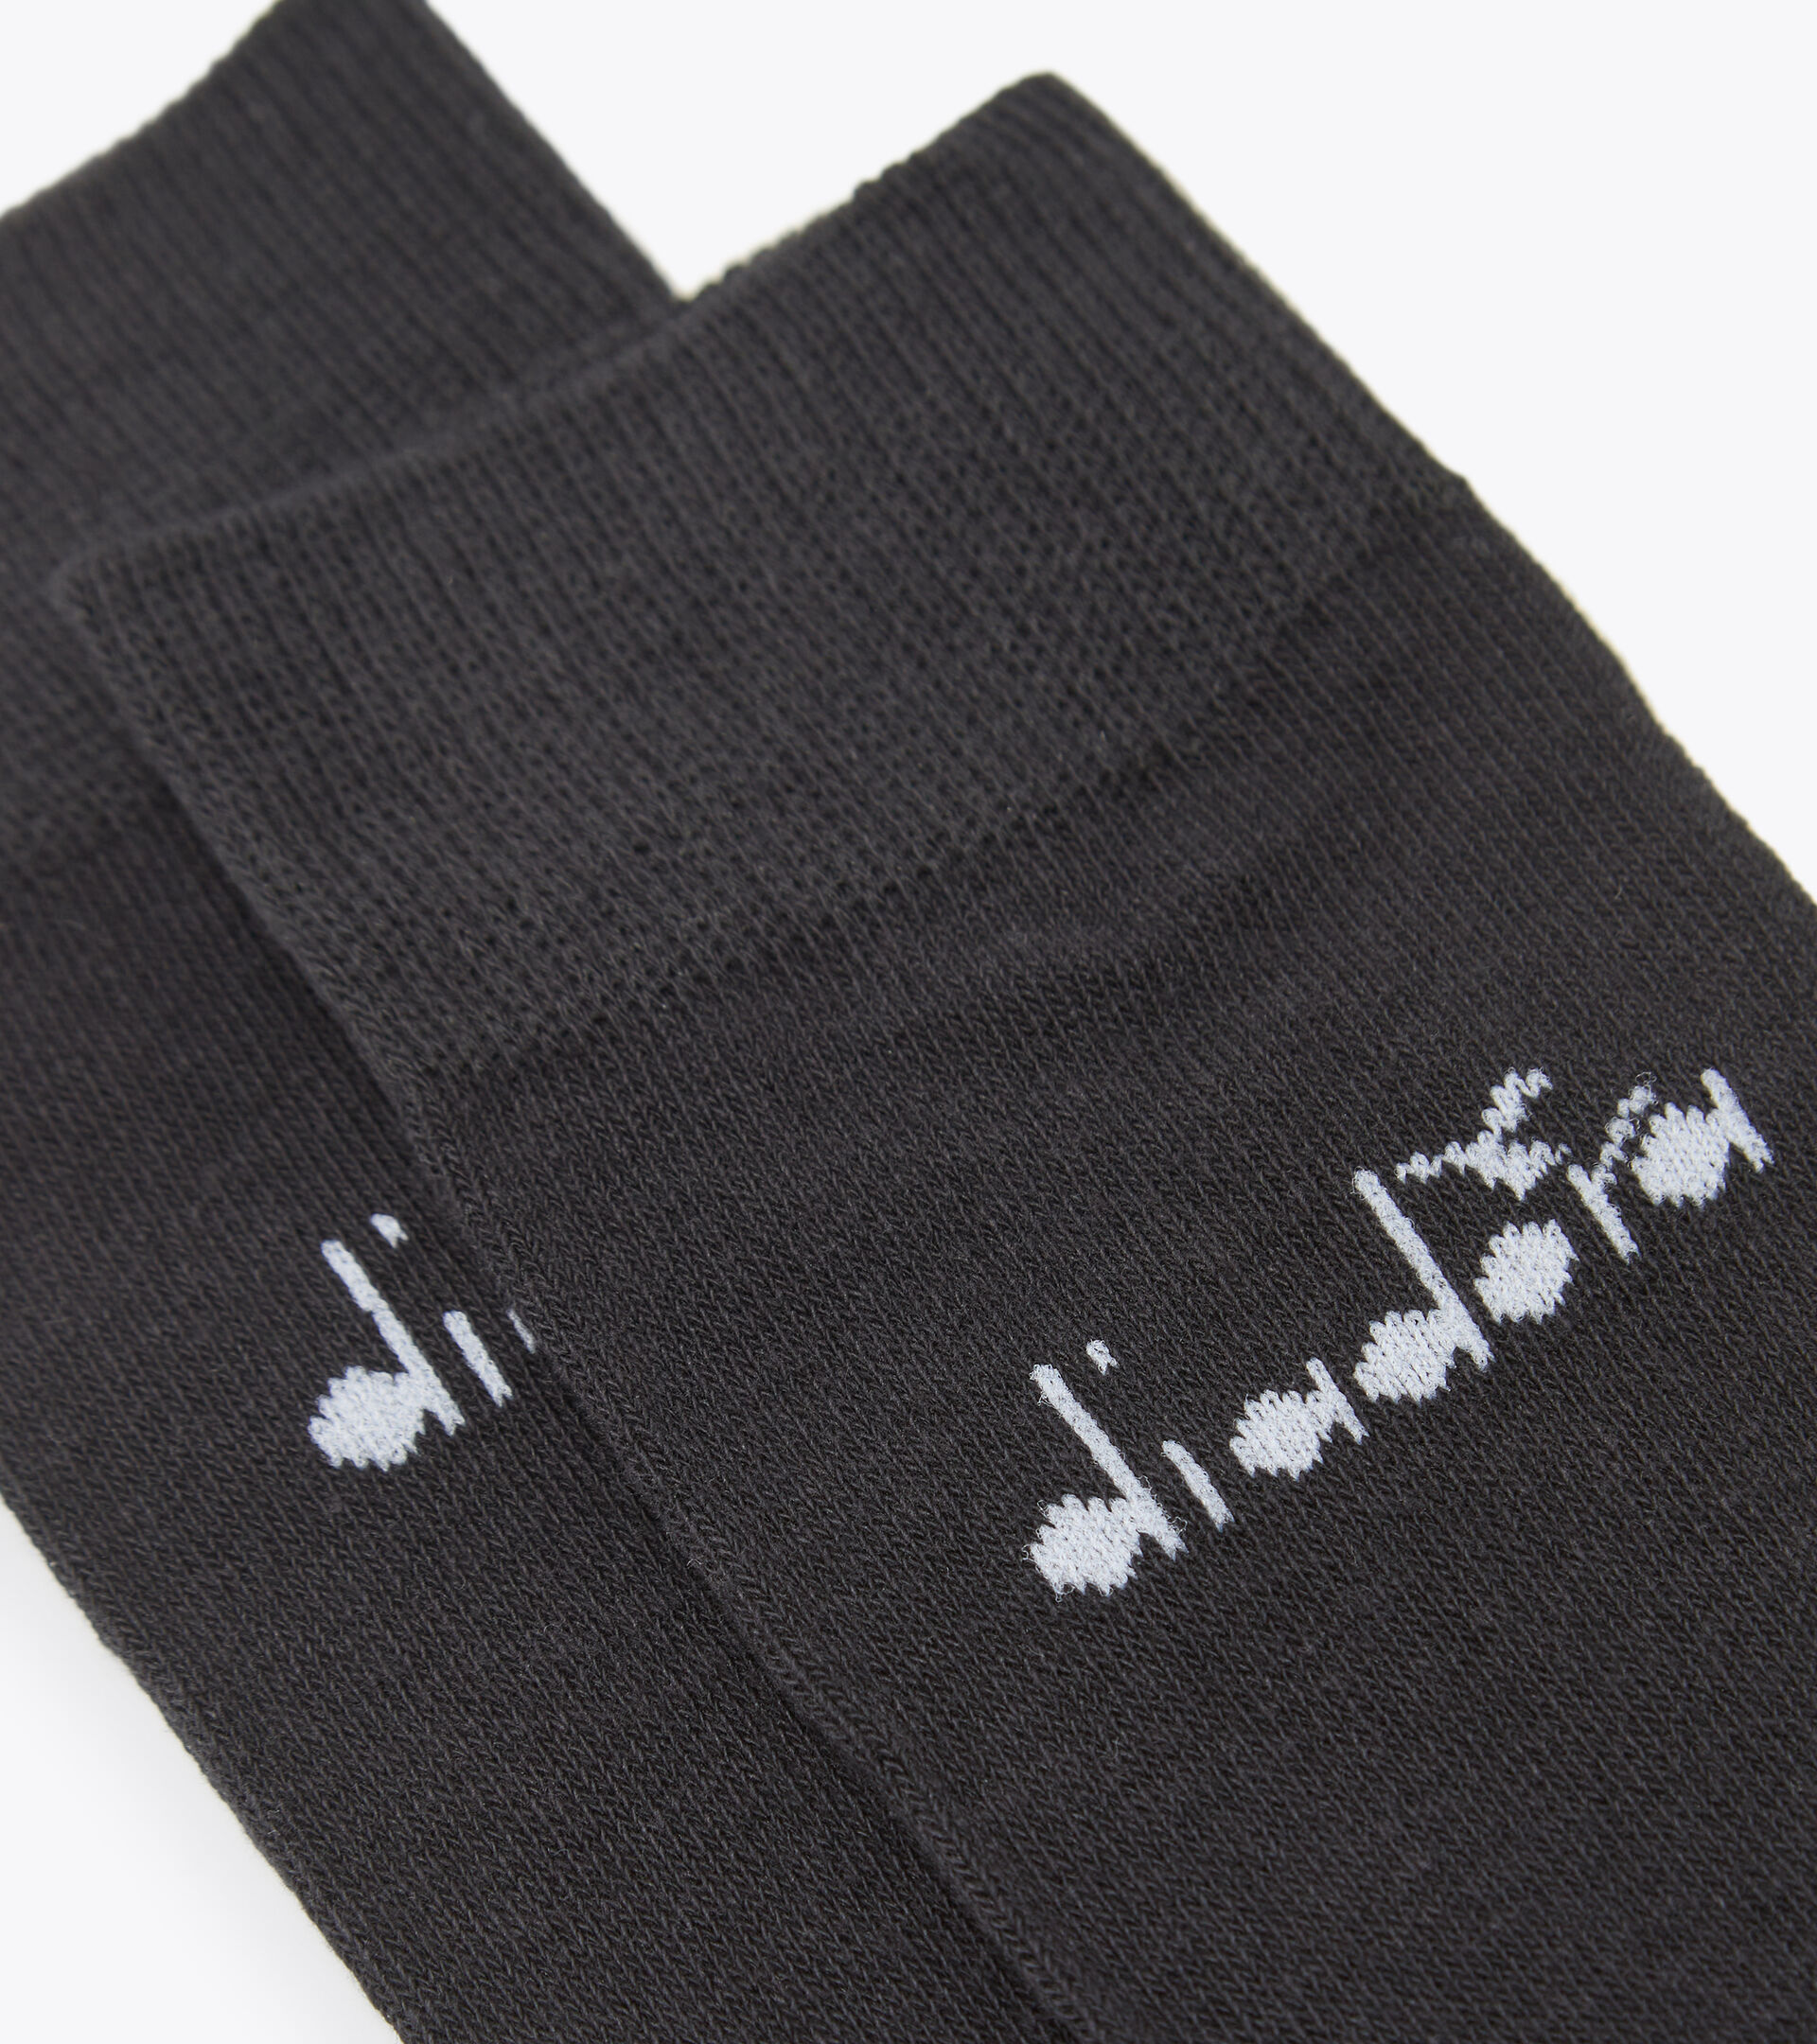 Mid socks pack - Three pair - Unisex U. MID PLAIN SOCKS 3-PACK BLACK - Diadora